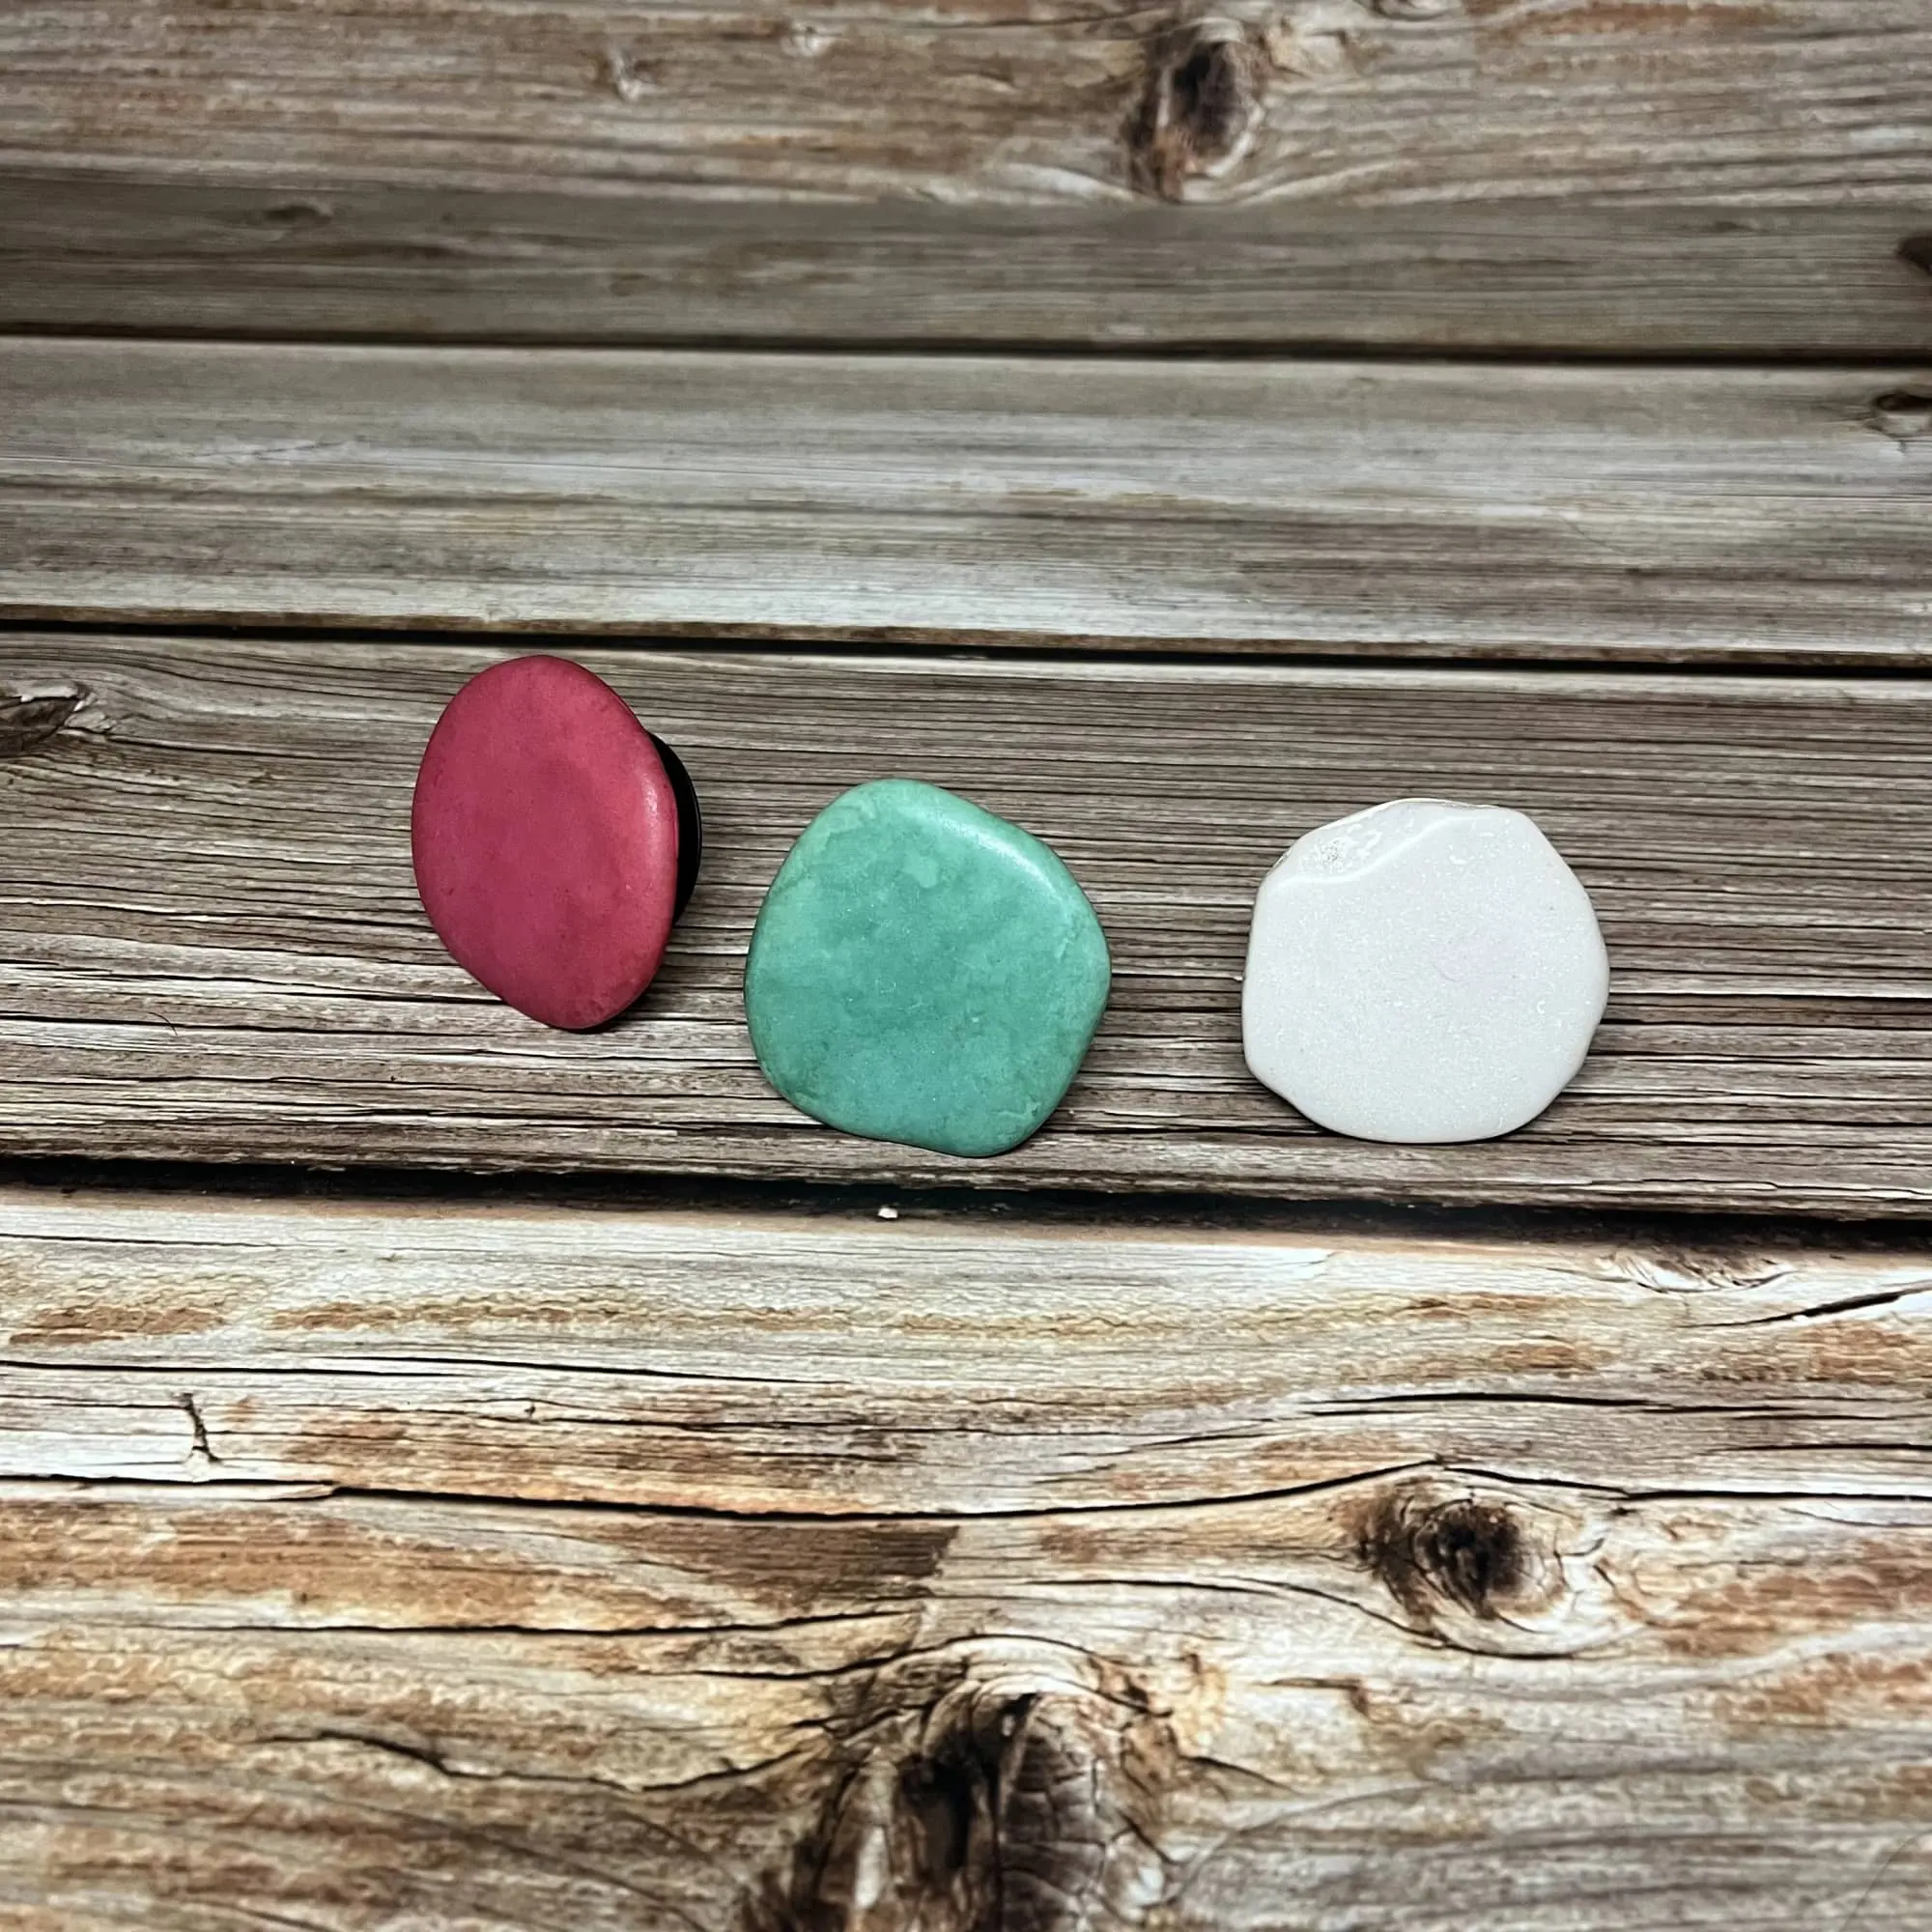 Оптовая продажа, индивидуальный держатель для телефона Dream.G с красным, зеленым и белым камнем